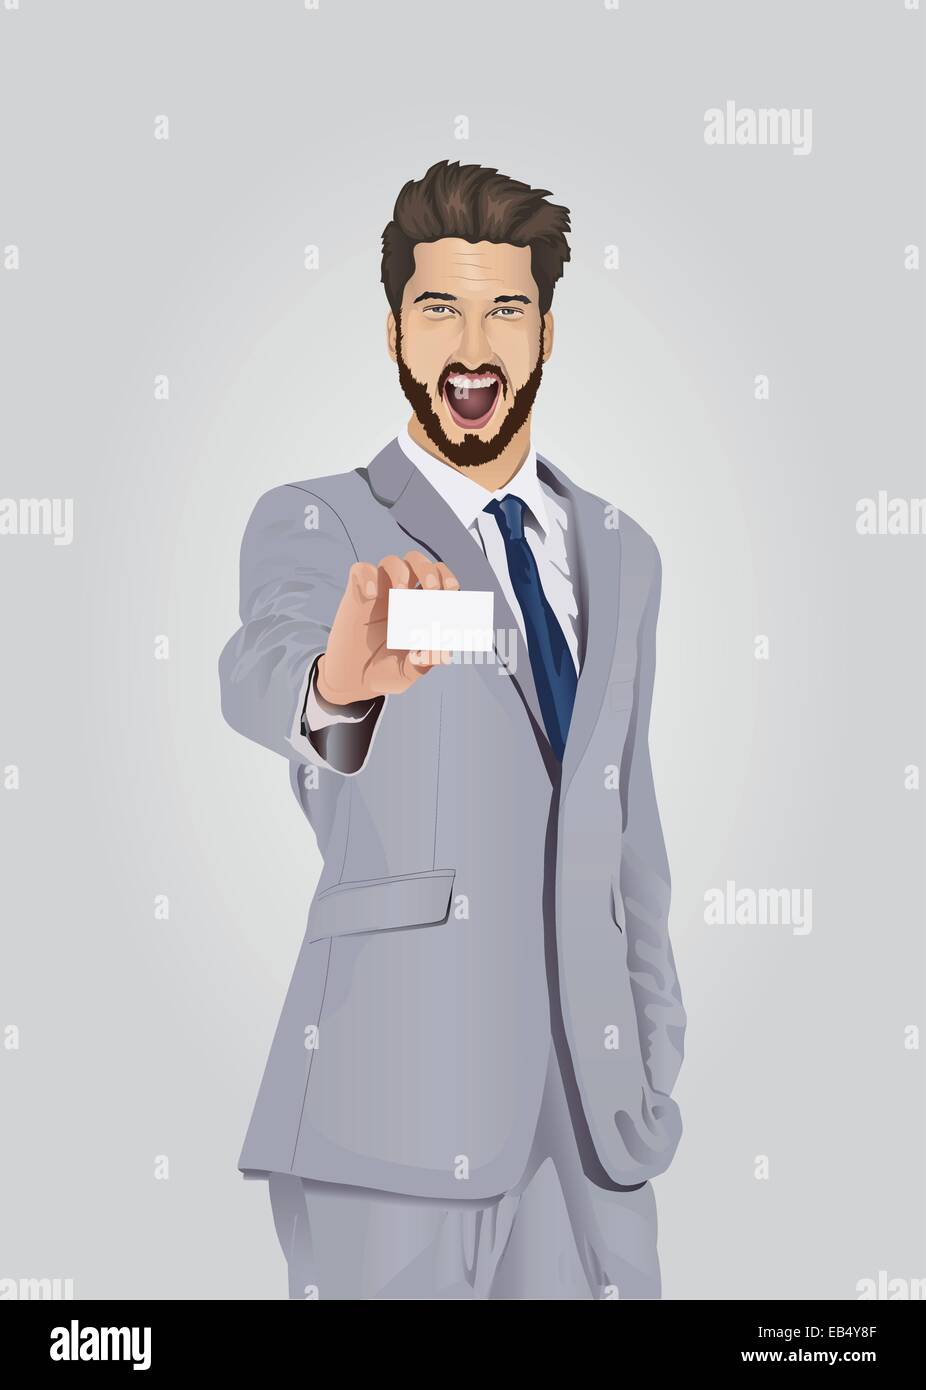 Smiling bien habillé businessman showing business card Illustration de Vecteur